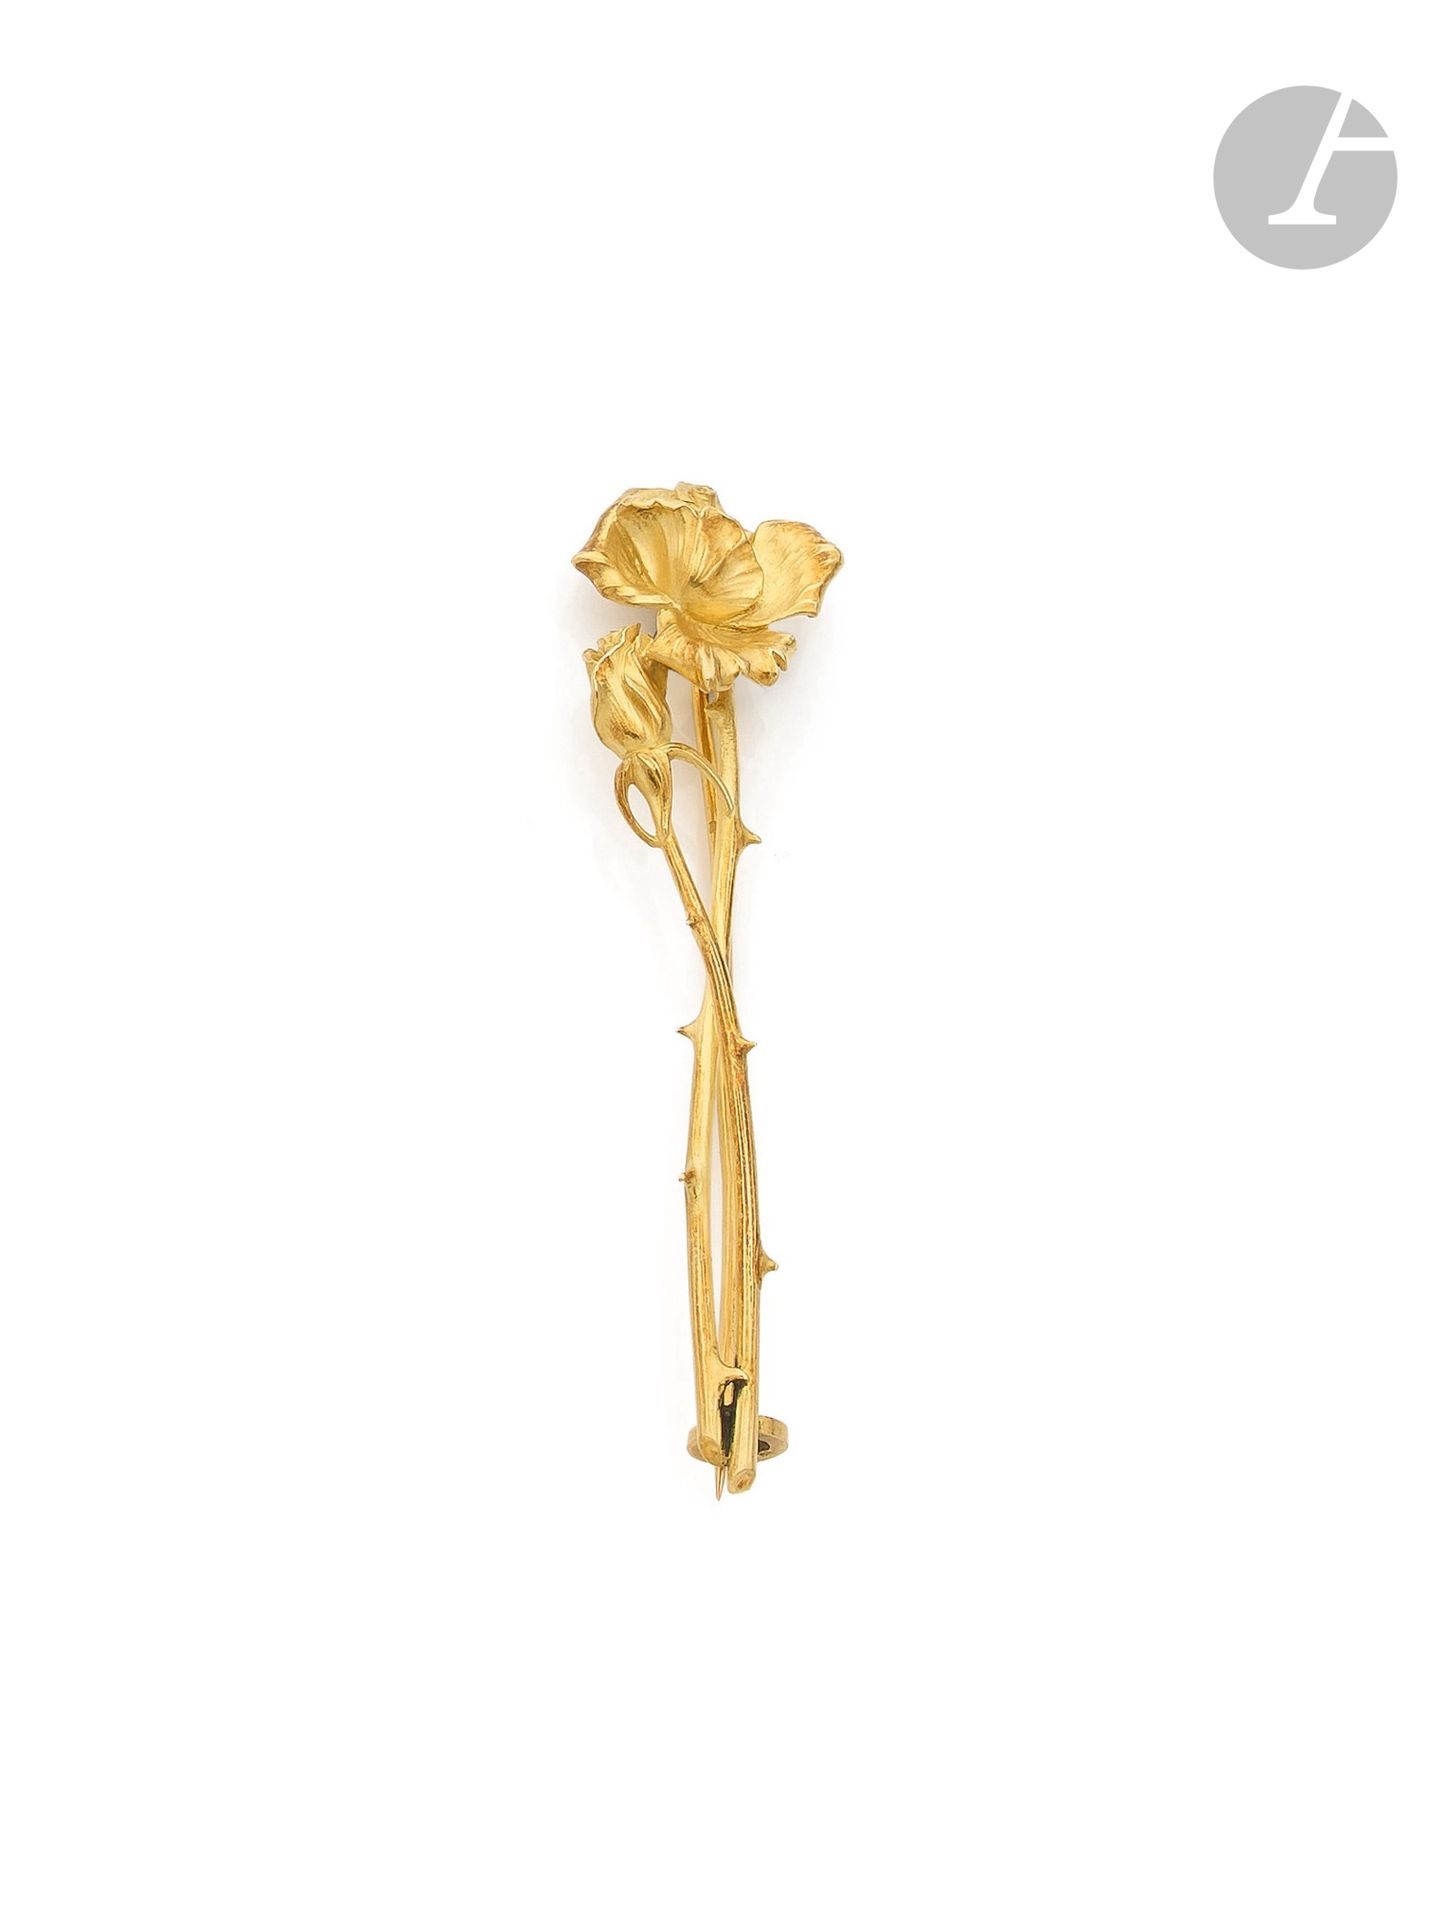 Null MIAULT
18K（750）金胸针，带有一朵天然玫瑰。已签名。20世纪初的法国作品。高度：约7厘米。重量 : 12,6 g

一枚20世纪初的Mia&hellip;